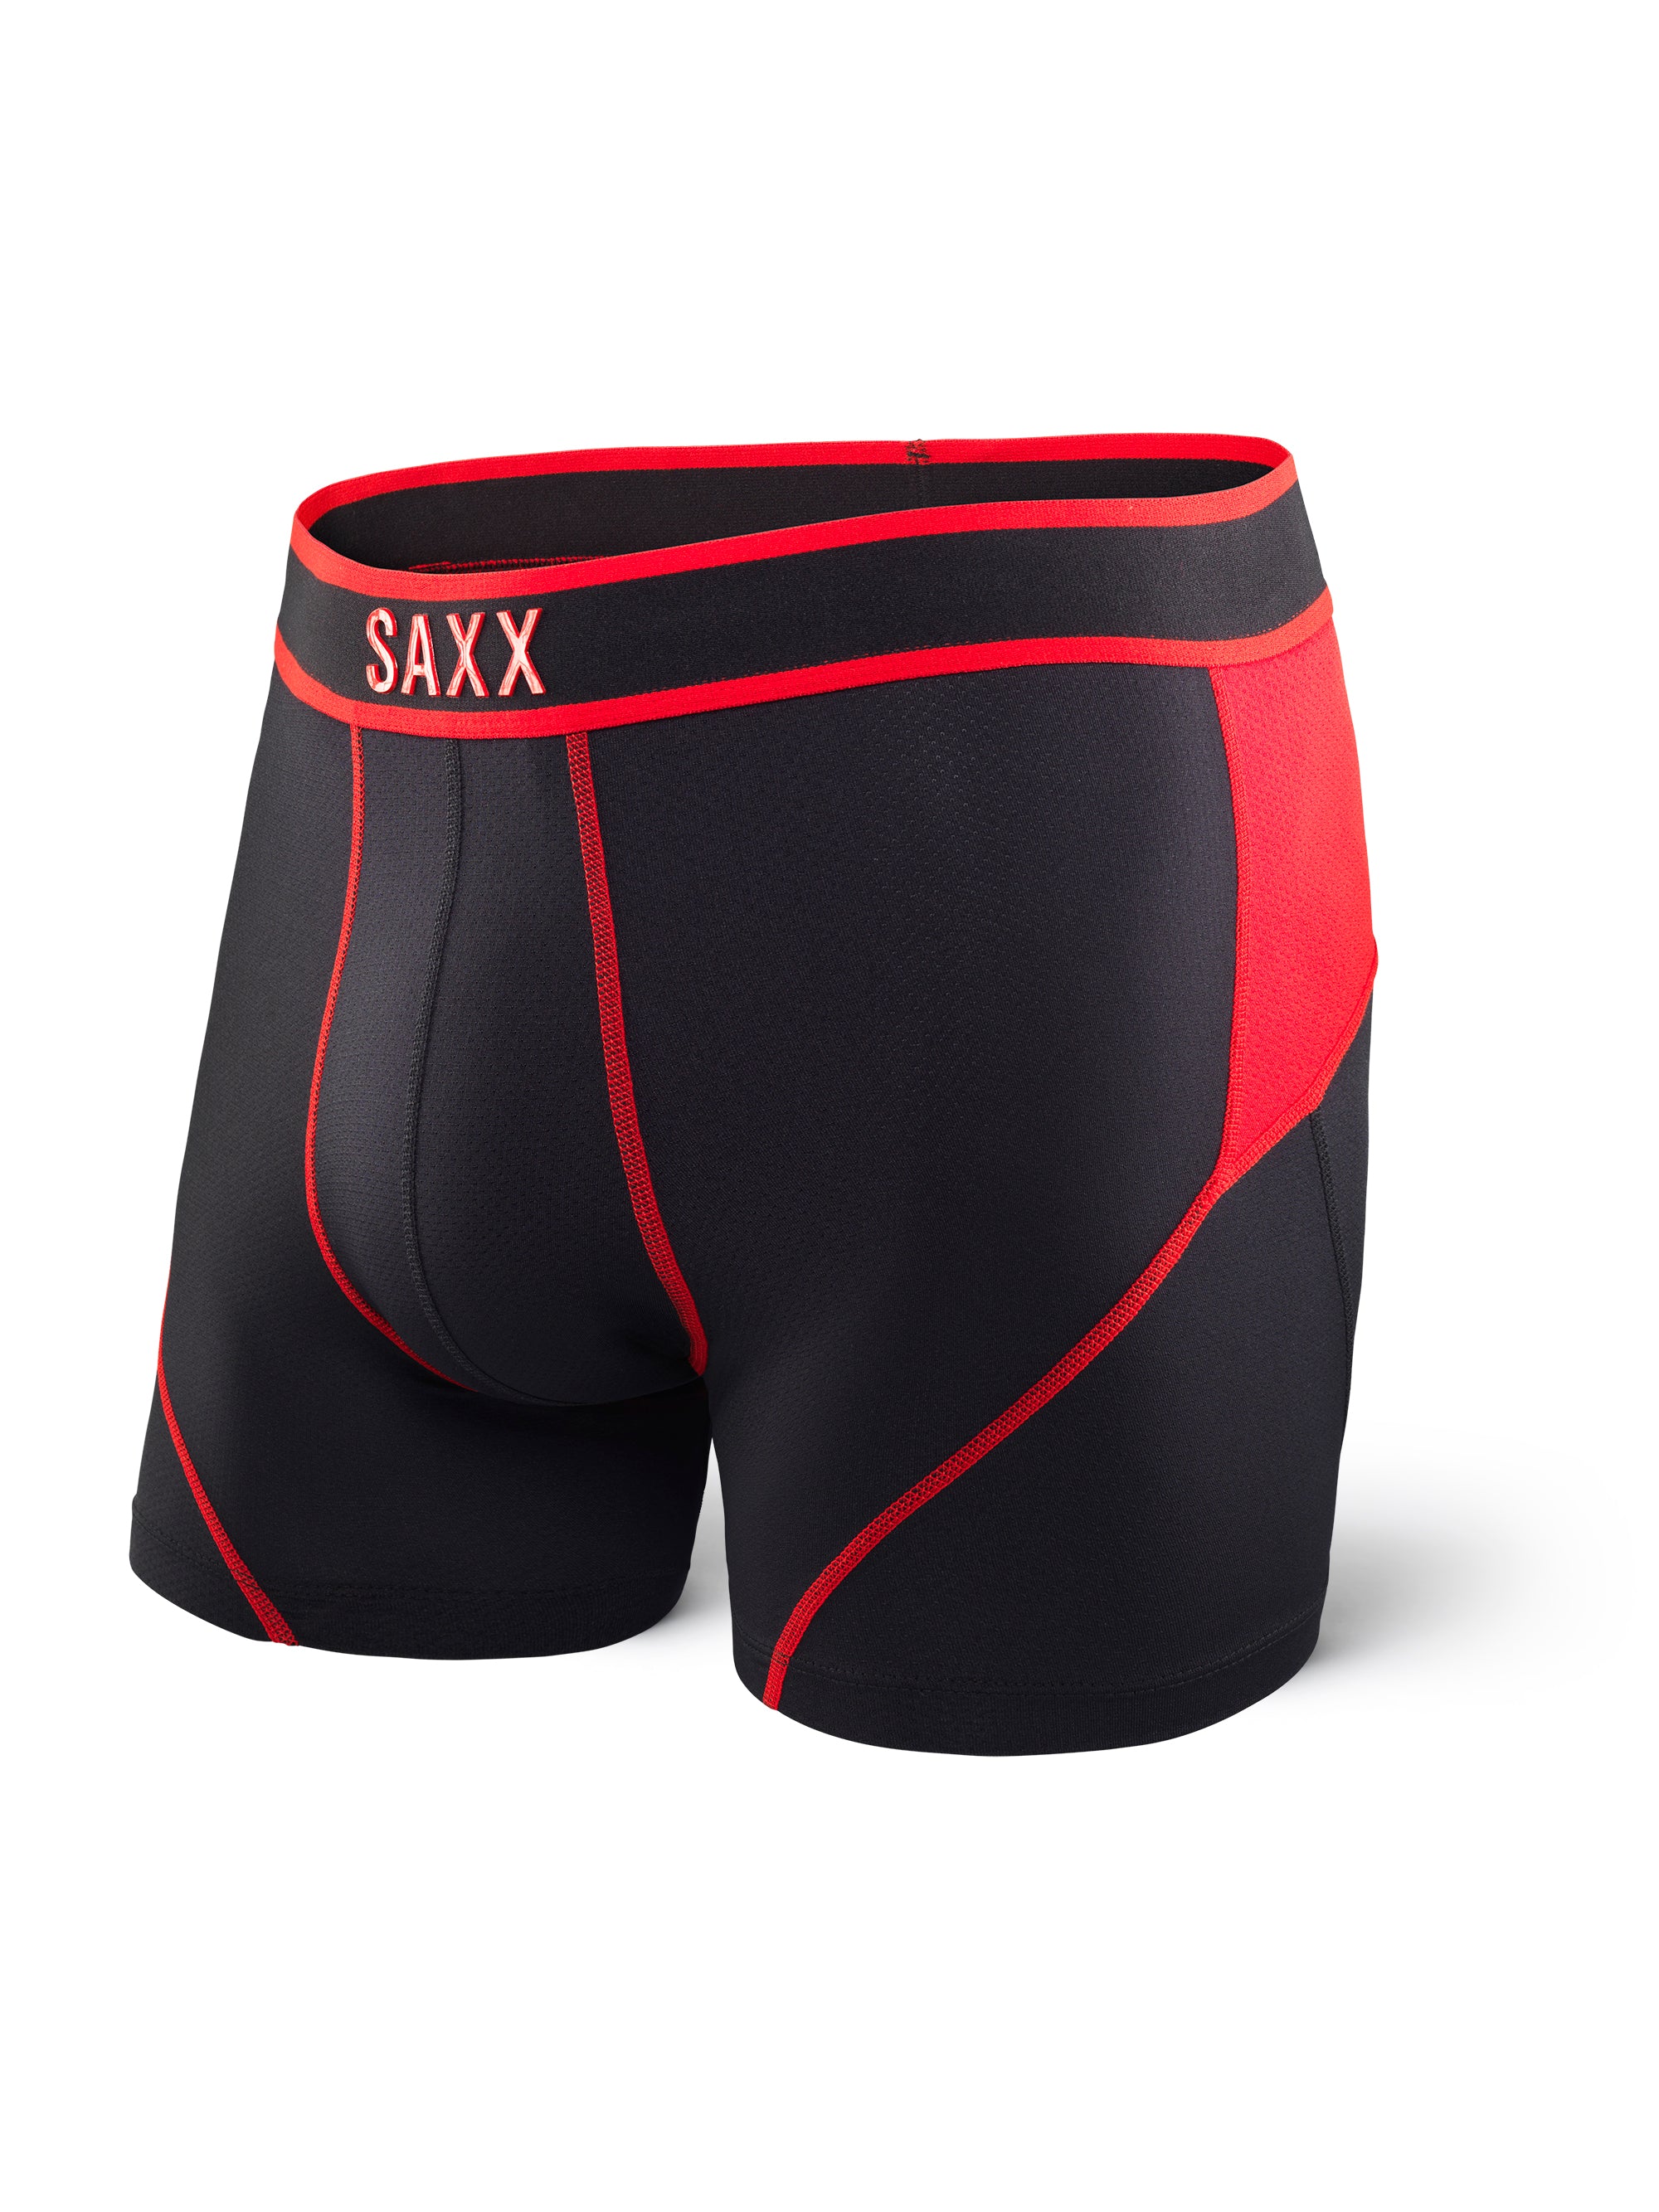 boxer saxx kinetic